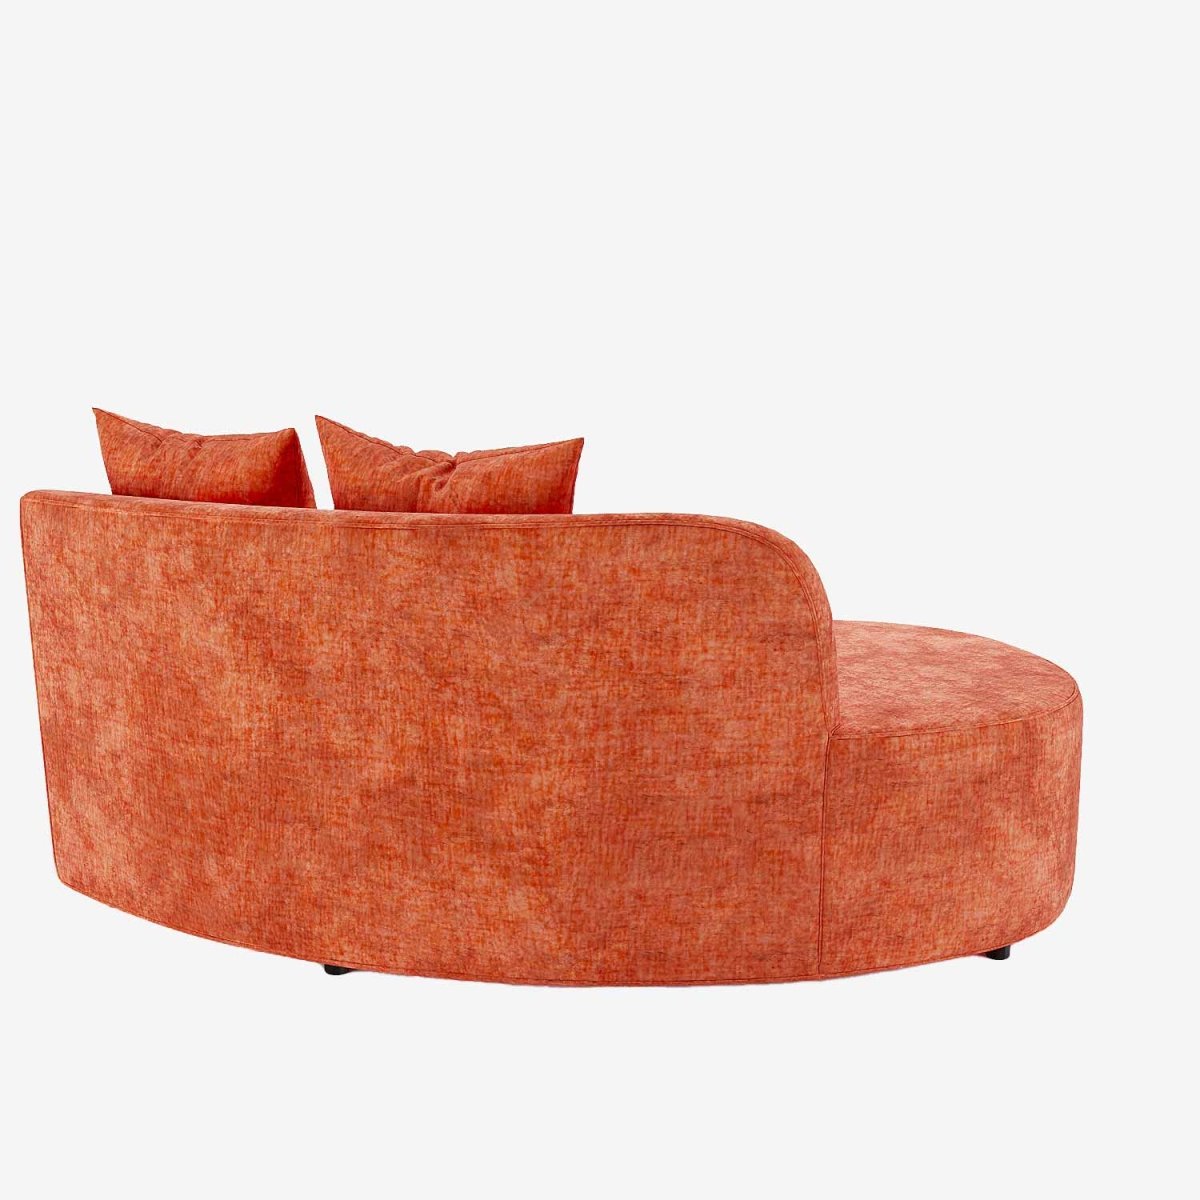 Grand canapé moderne salon élégant en velours oranger corail - Potiron Paris, les canapés design de qualité pas chers